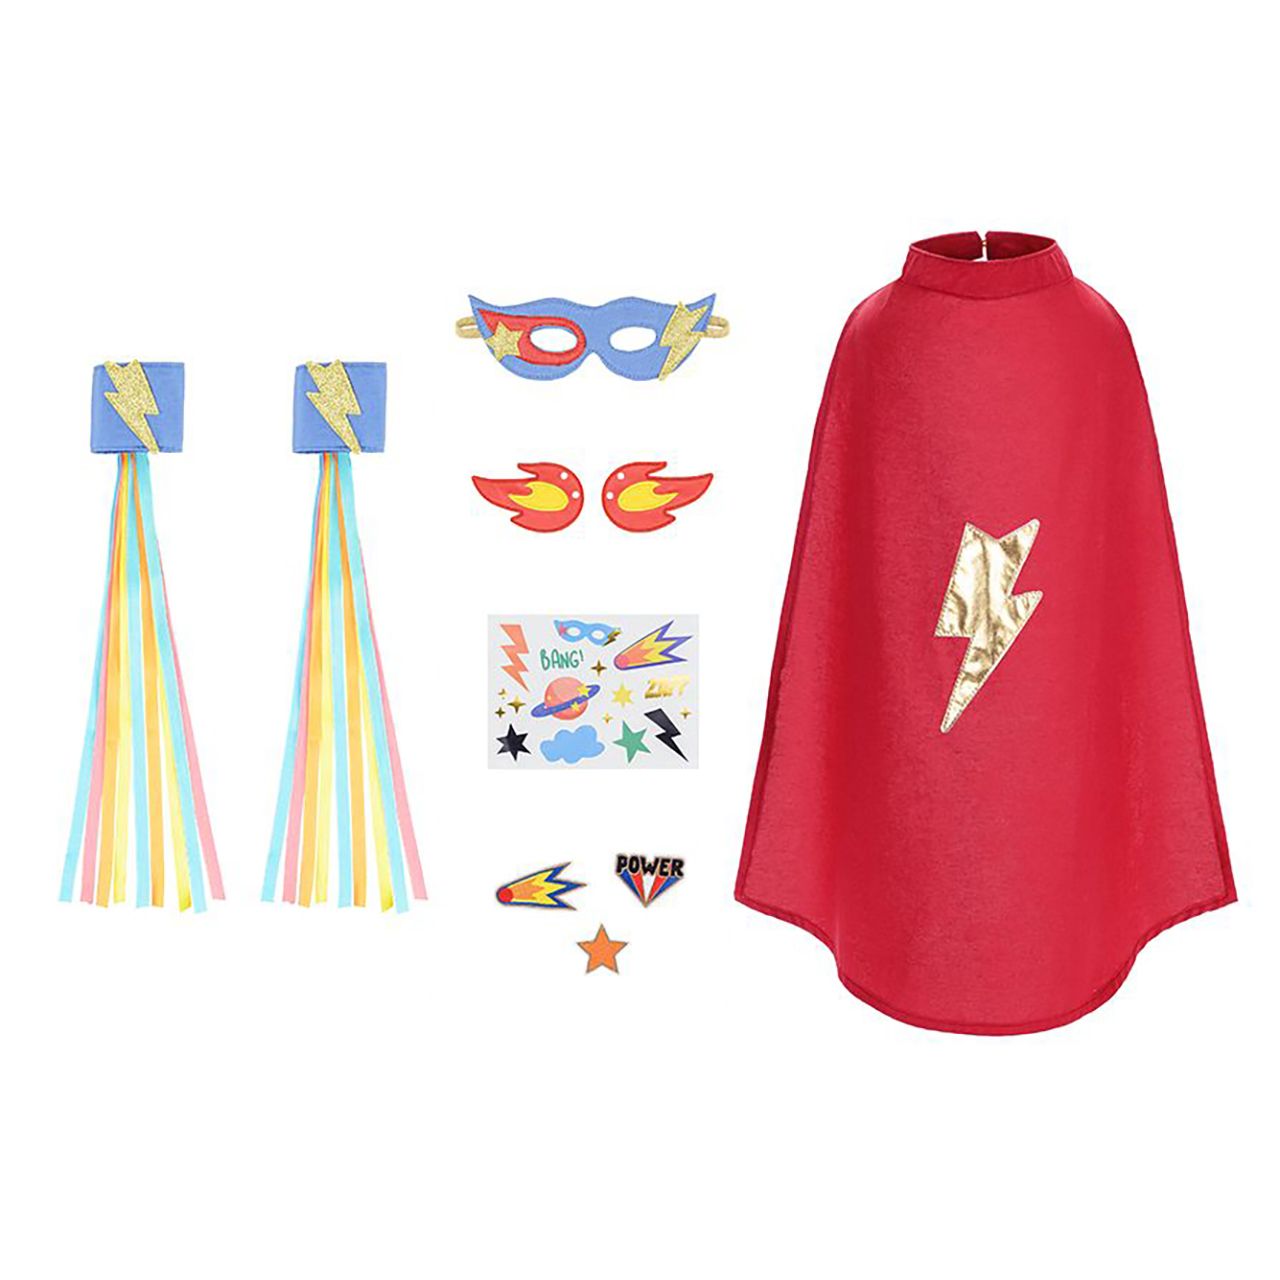 PartyDeco: disfrazado en una maleta de superhéroes